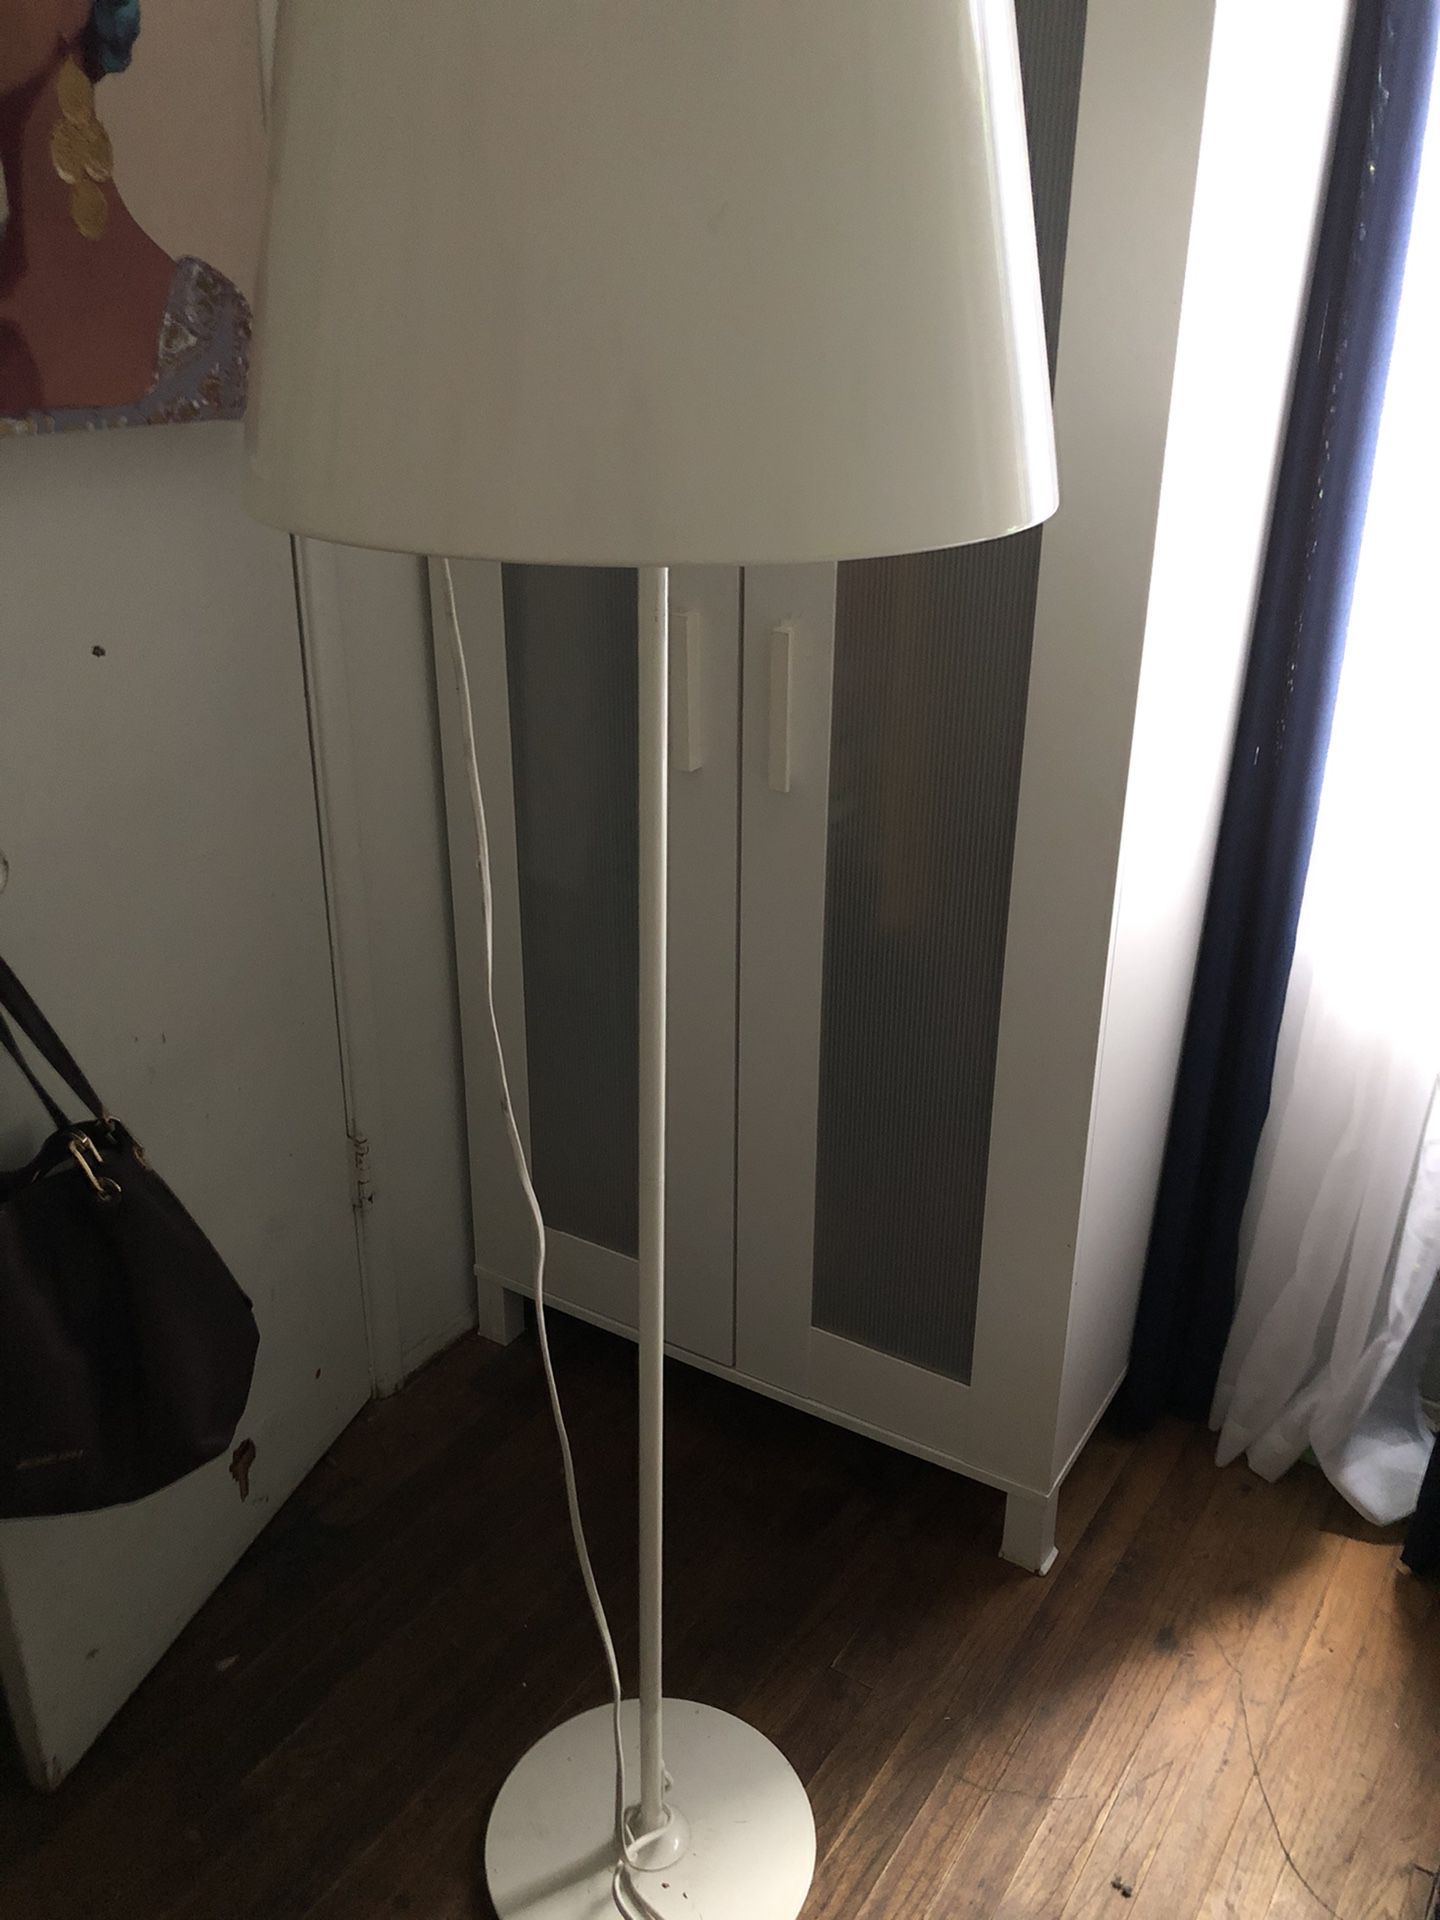 Metal lamp